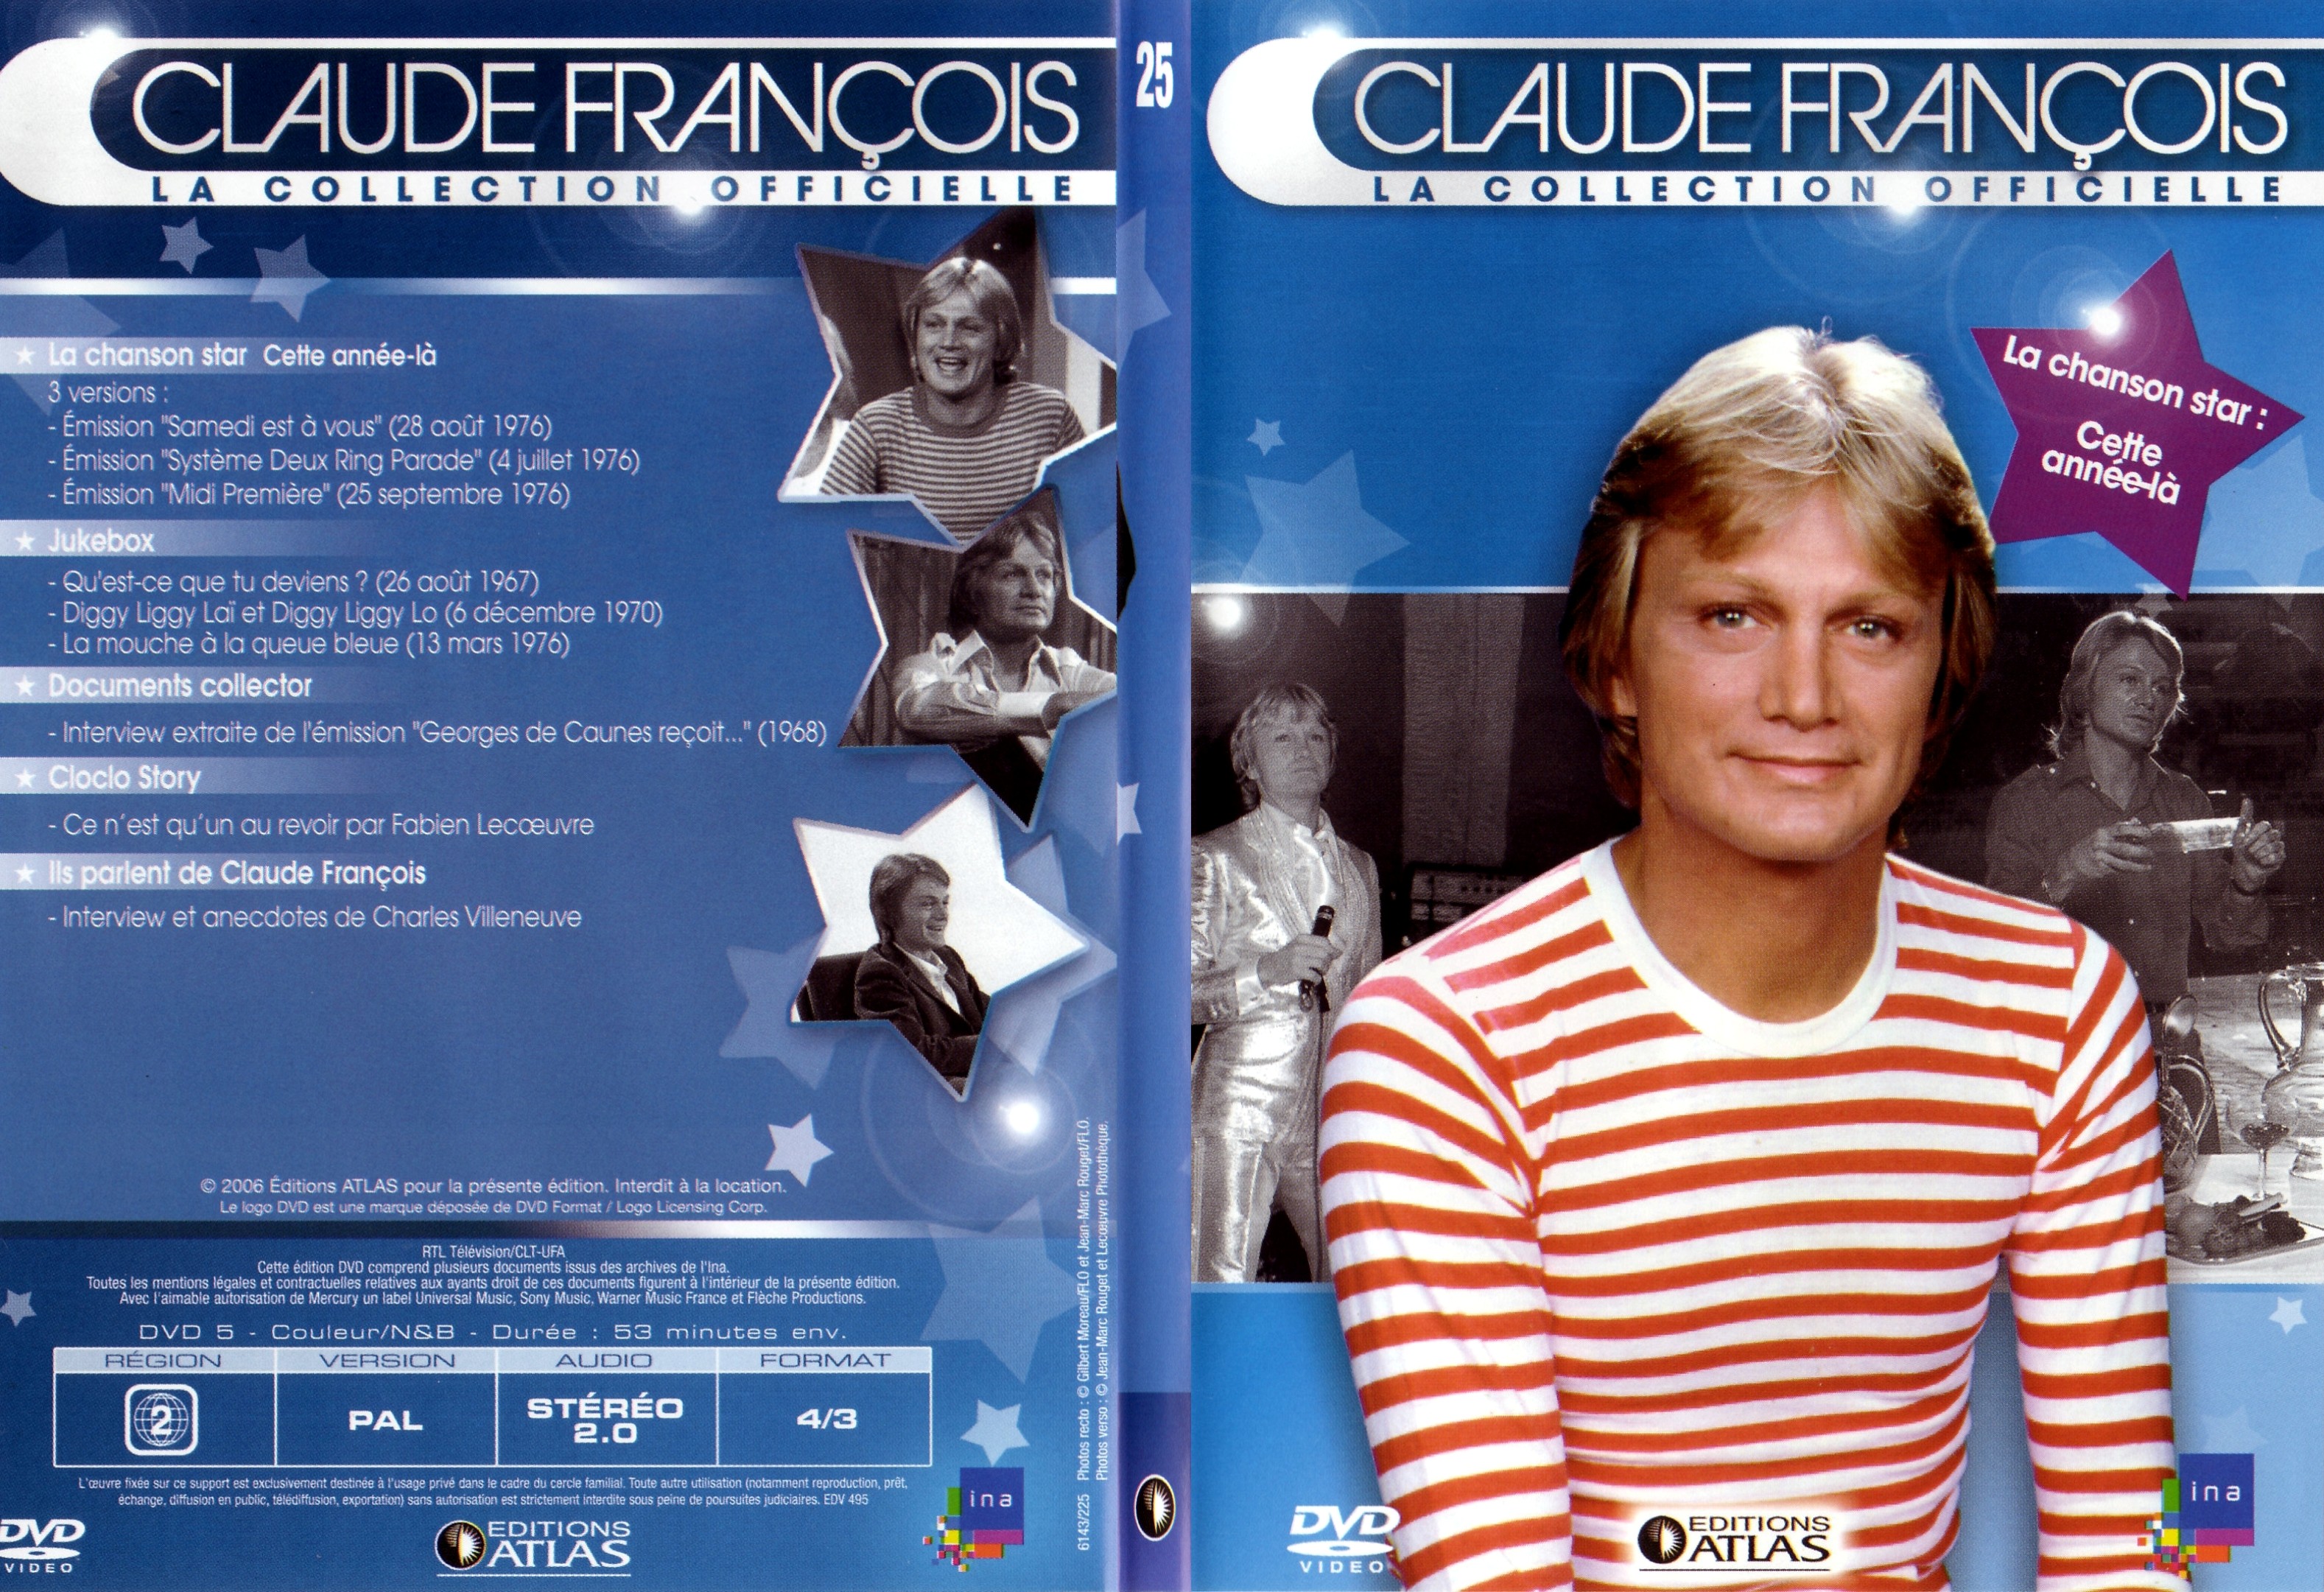 Jaquette DVD Claude francois le collection officielle vol 25 - SLIM